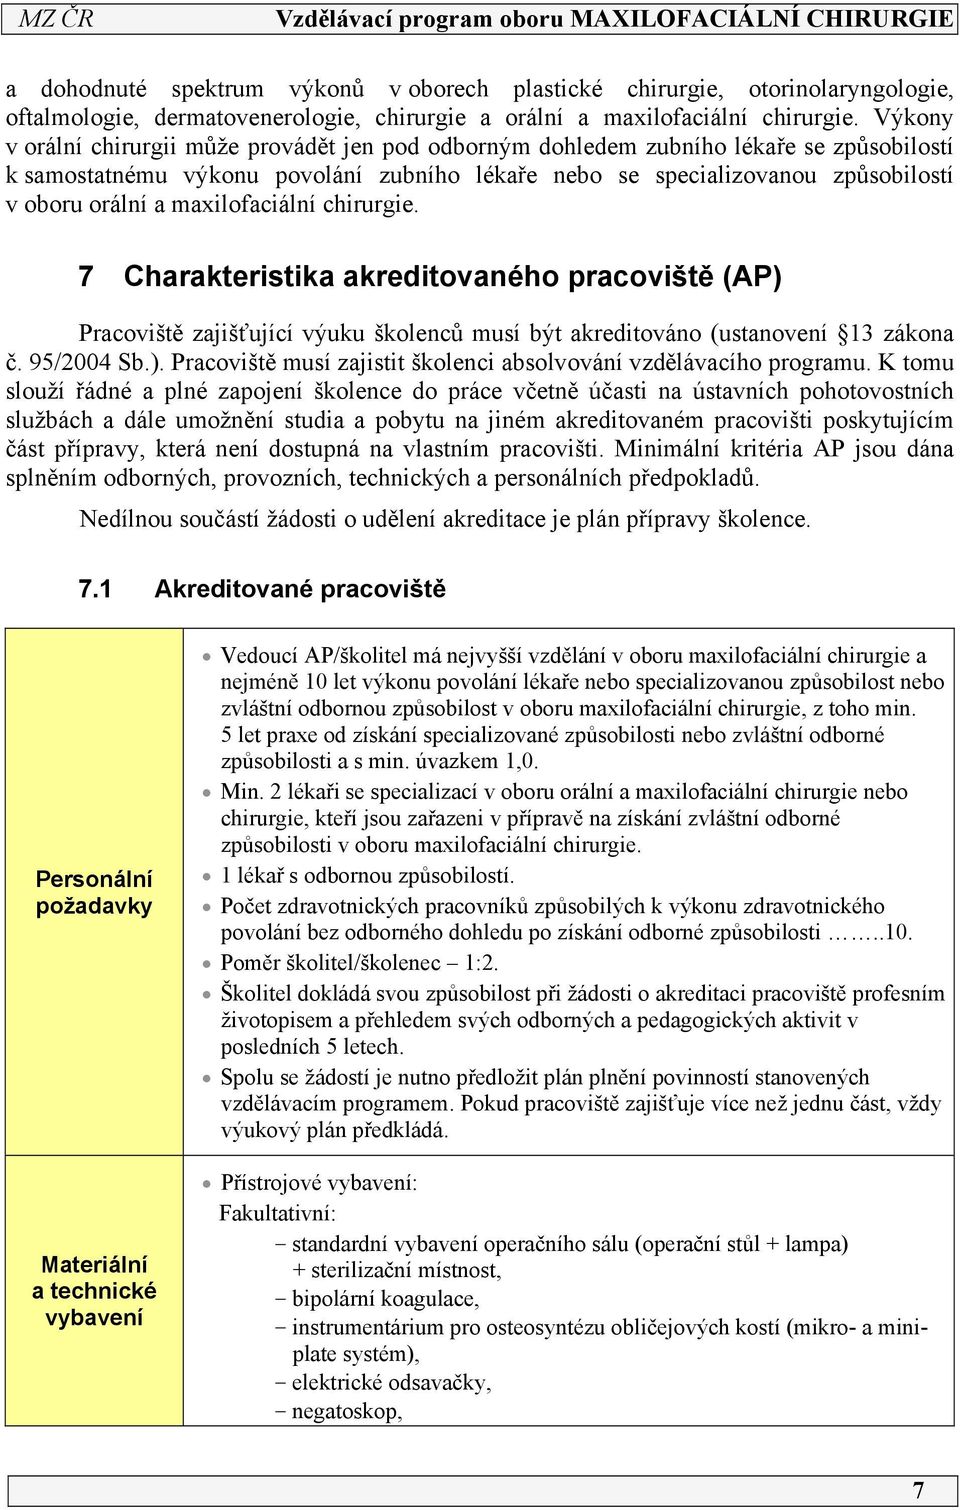 maxilofaciální chirurgie. 7 Charakteristika akreditovaného pracoviště (AP) Pracoviště zajišťující výuku školenců musí být akreditováno (ustanovení 3 zákona č. 95/2004 Sb.). Pracoviště musí zajistit školenci absolvování vzdělávacího programu.